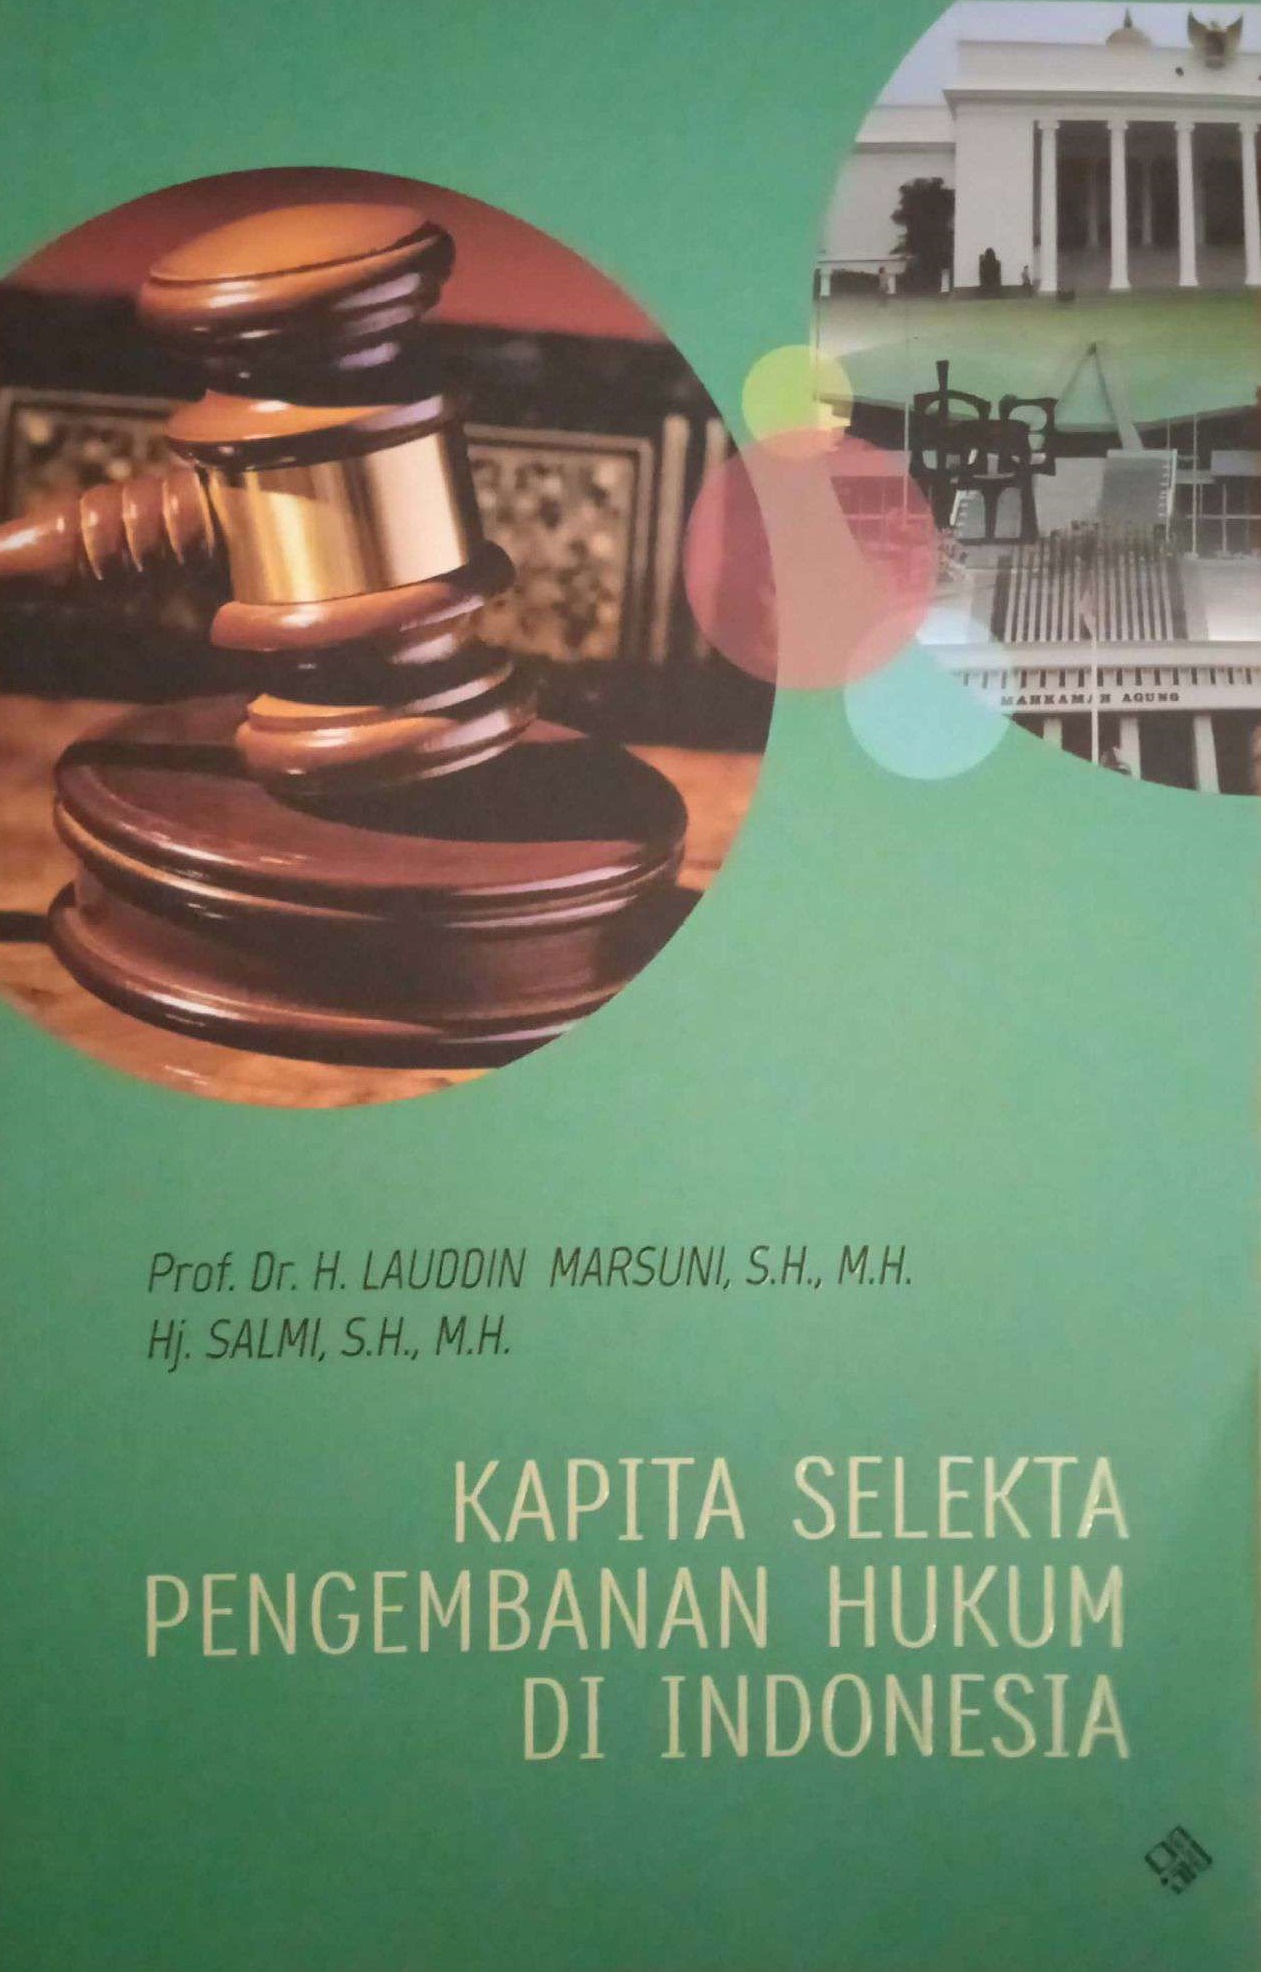 Kapita selekta pengembangan hukum di Indonesia